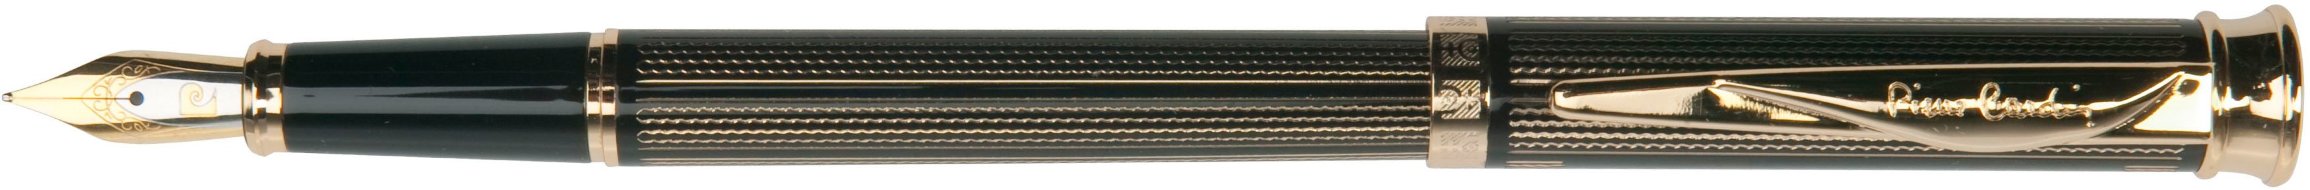 Перьевая ручка Pierre Cardin Tresor гравировка, черный лак, позолота